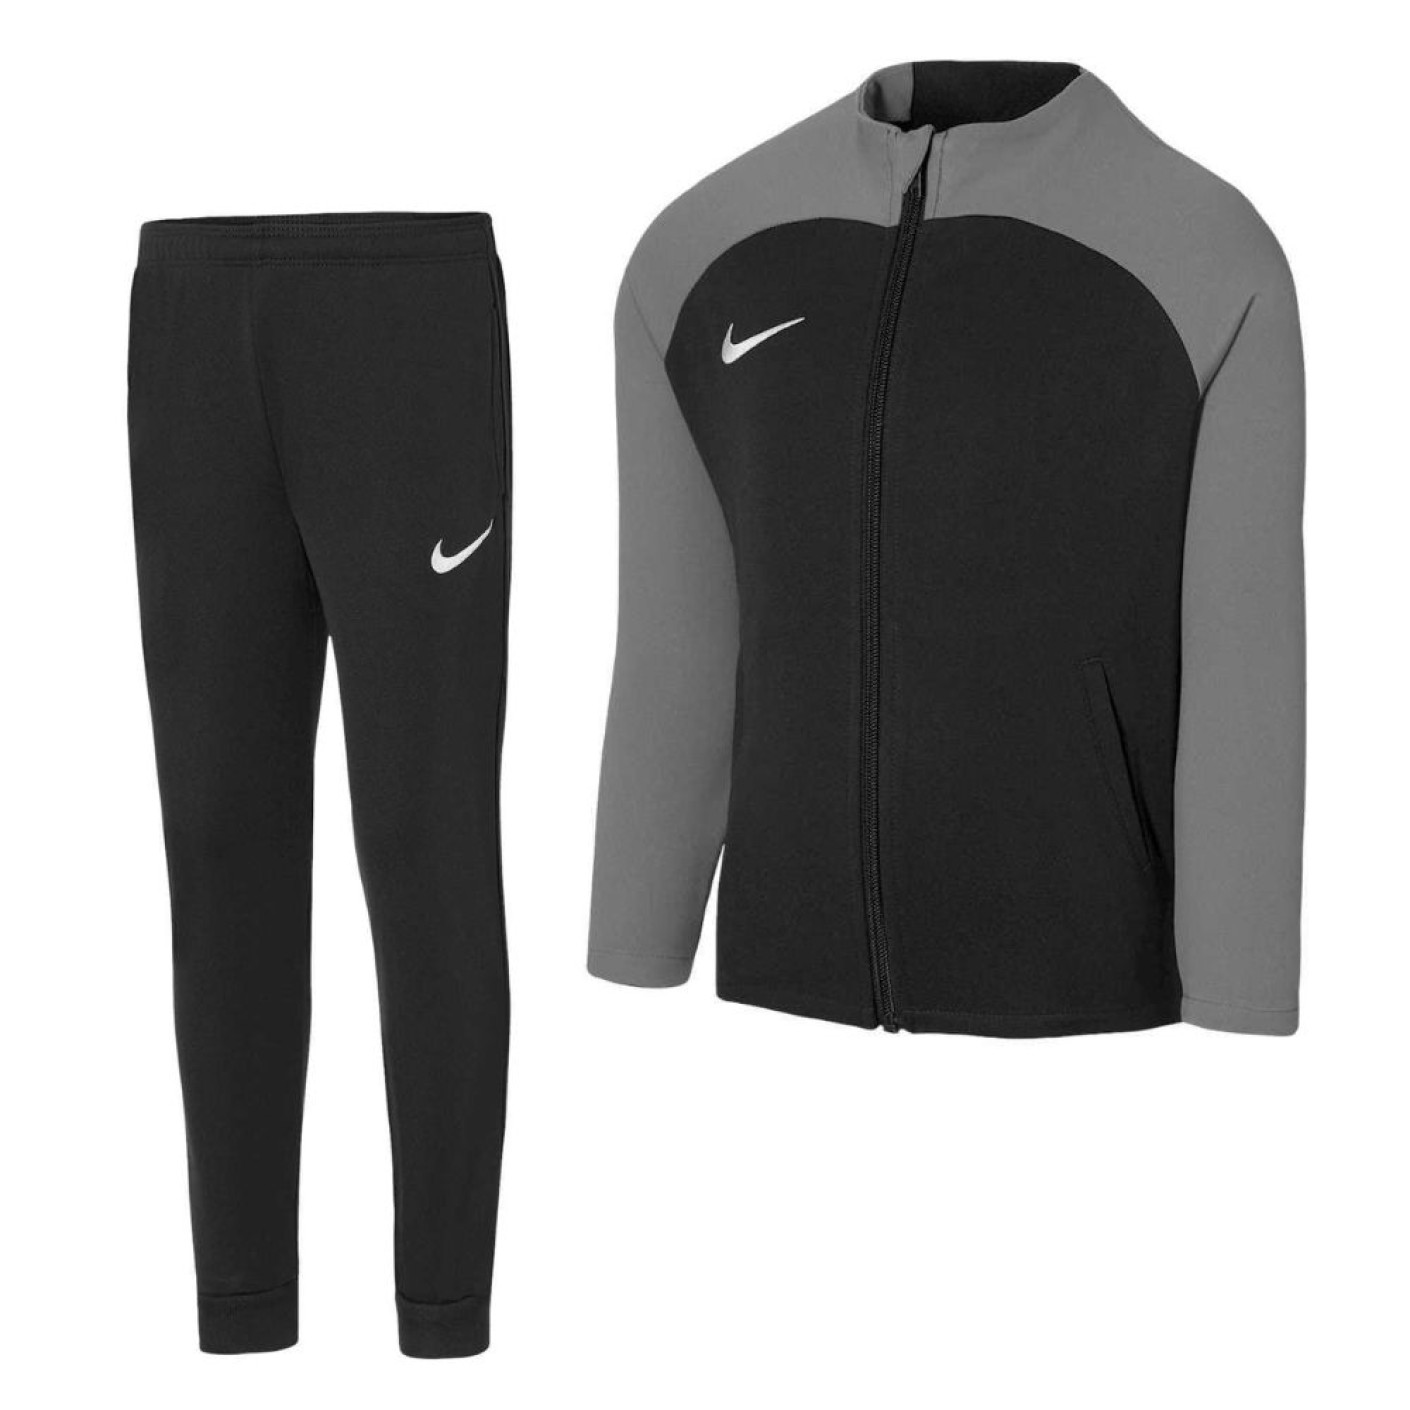 Survêtement Nike Academy Pro pour enfant, noir et gris